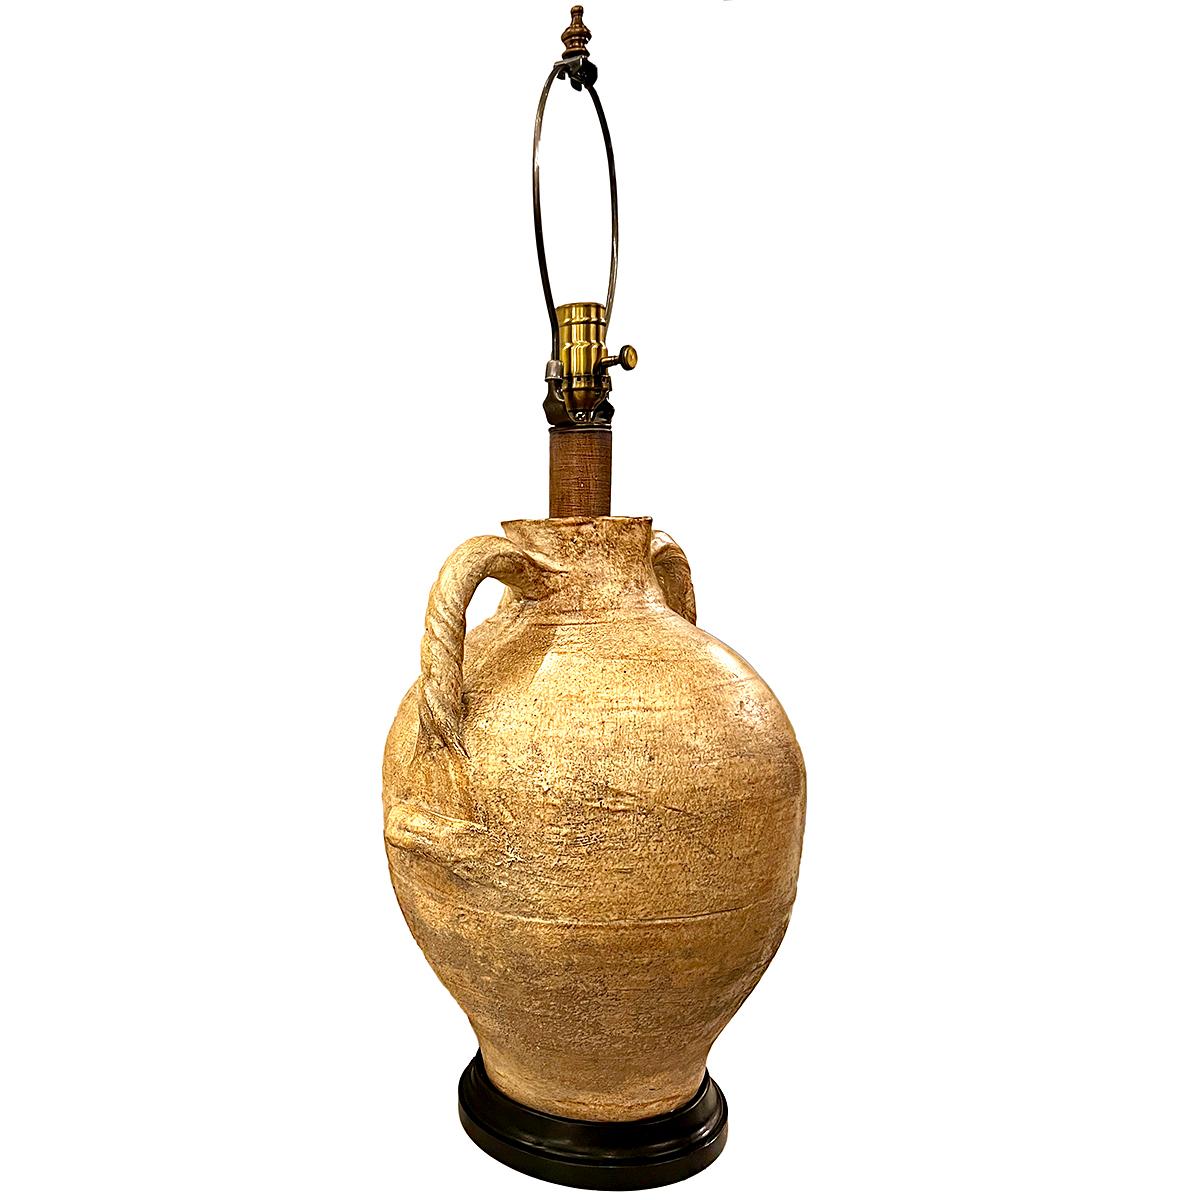 Eine italienische Keramik-Tischlampe aus der Mitte des Jahrhunderts mit Griffen und originalem Finish.

Abmessungen:
Höhe des Körpers: 17